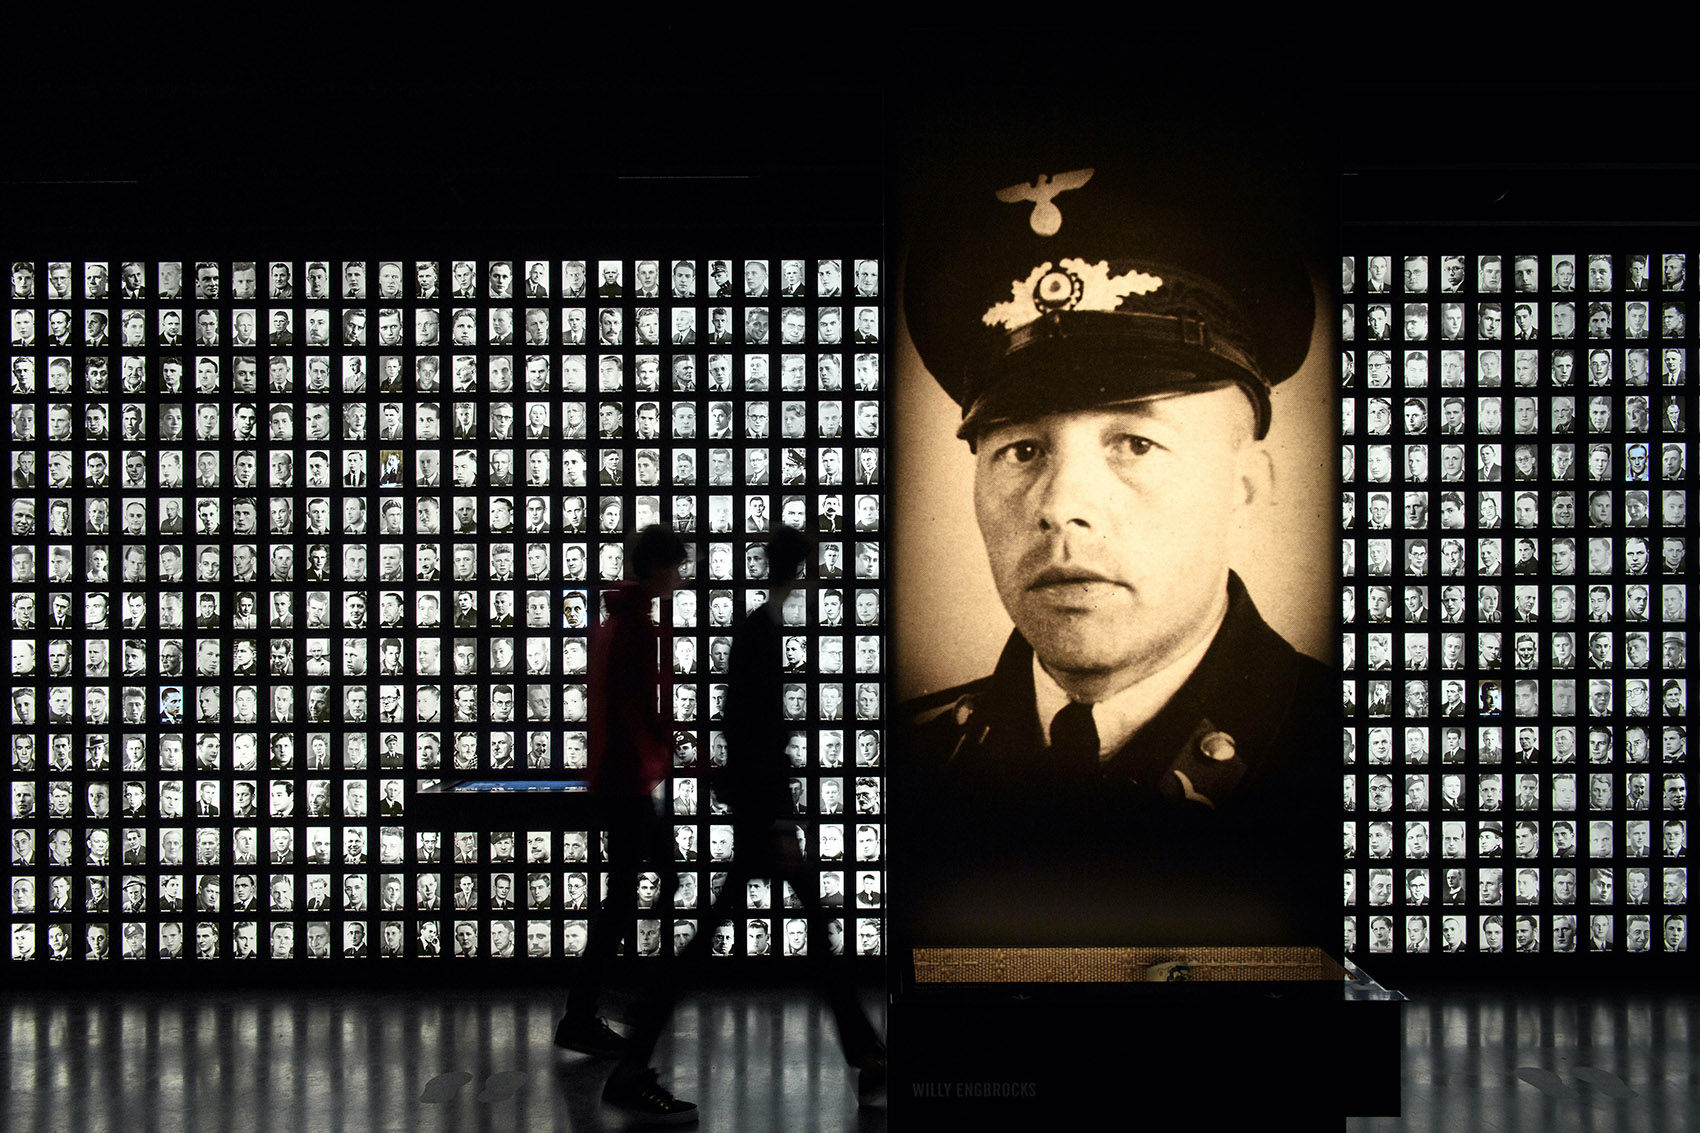 阿默斯福特集中营国家纪念馆永久展览，荷兰/讲述故事，反思战争-56